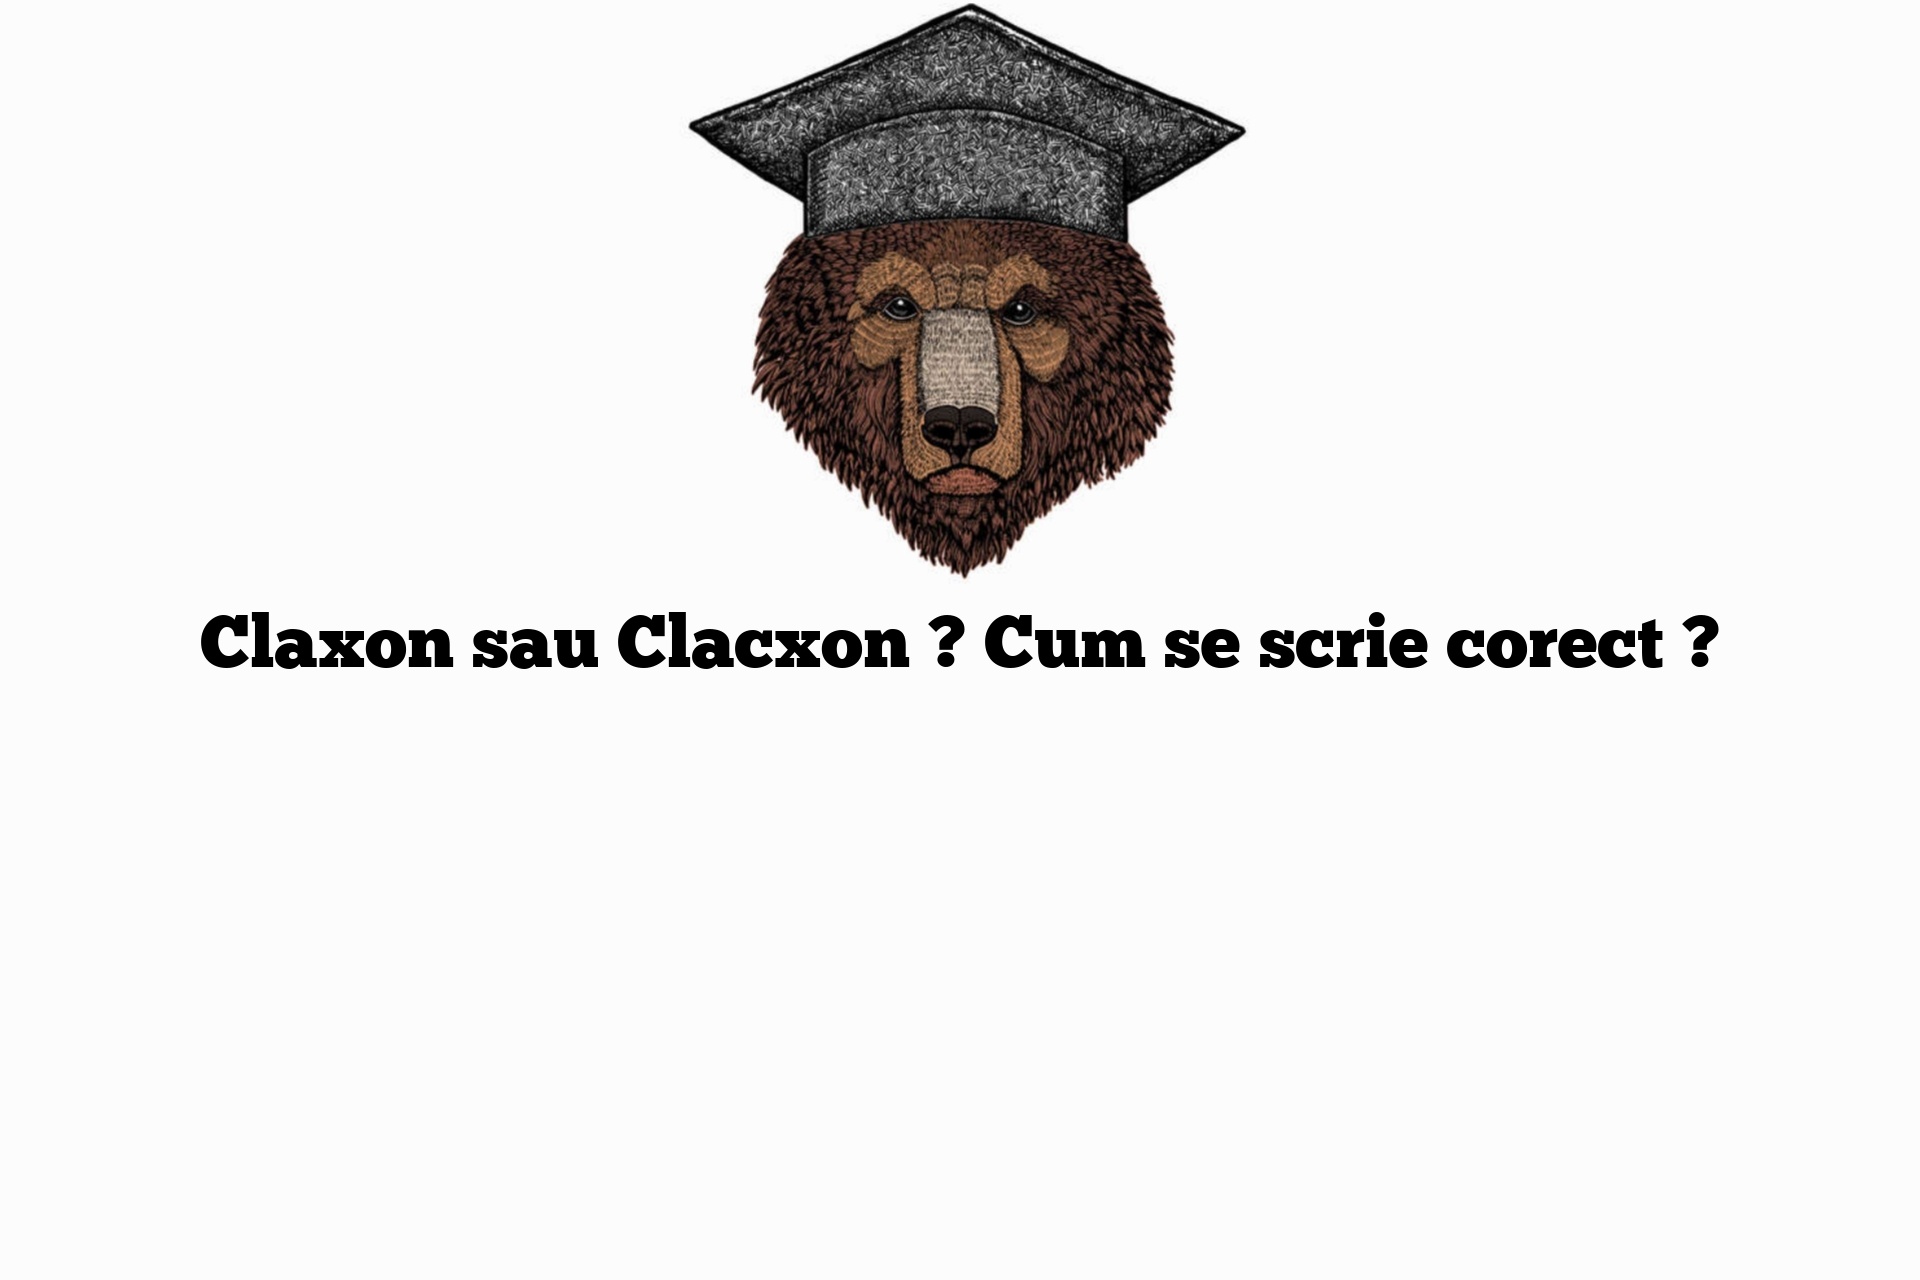 Claxon sau Clacxon ? Cum se scrie corect ?